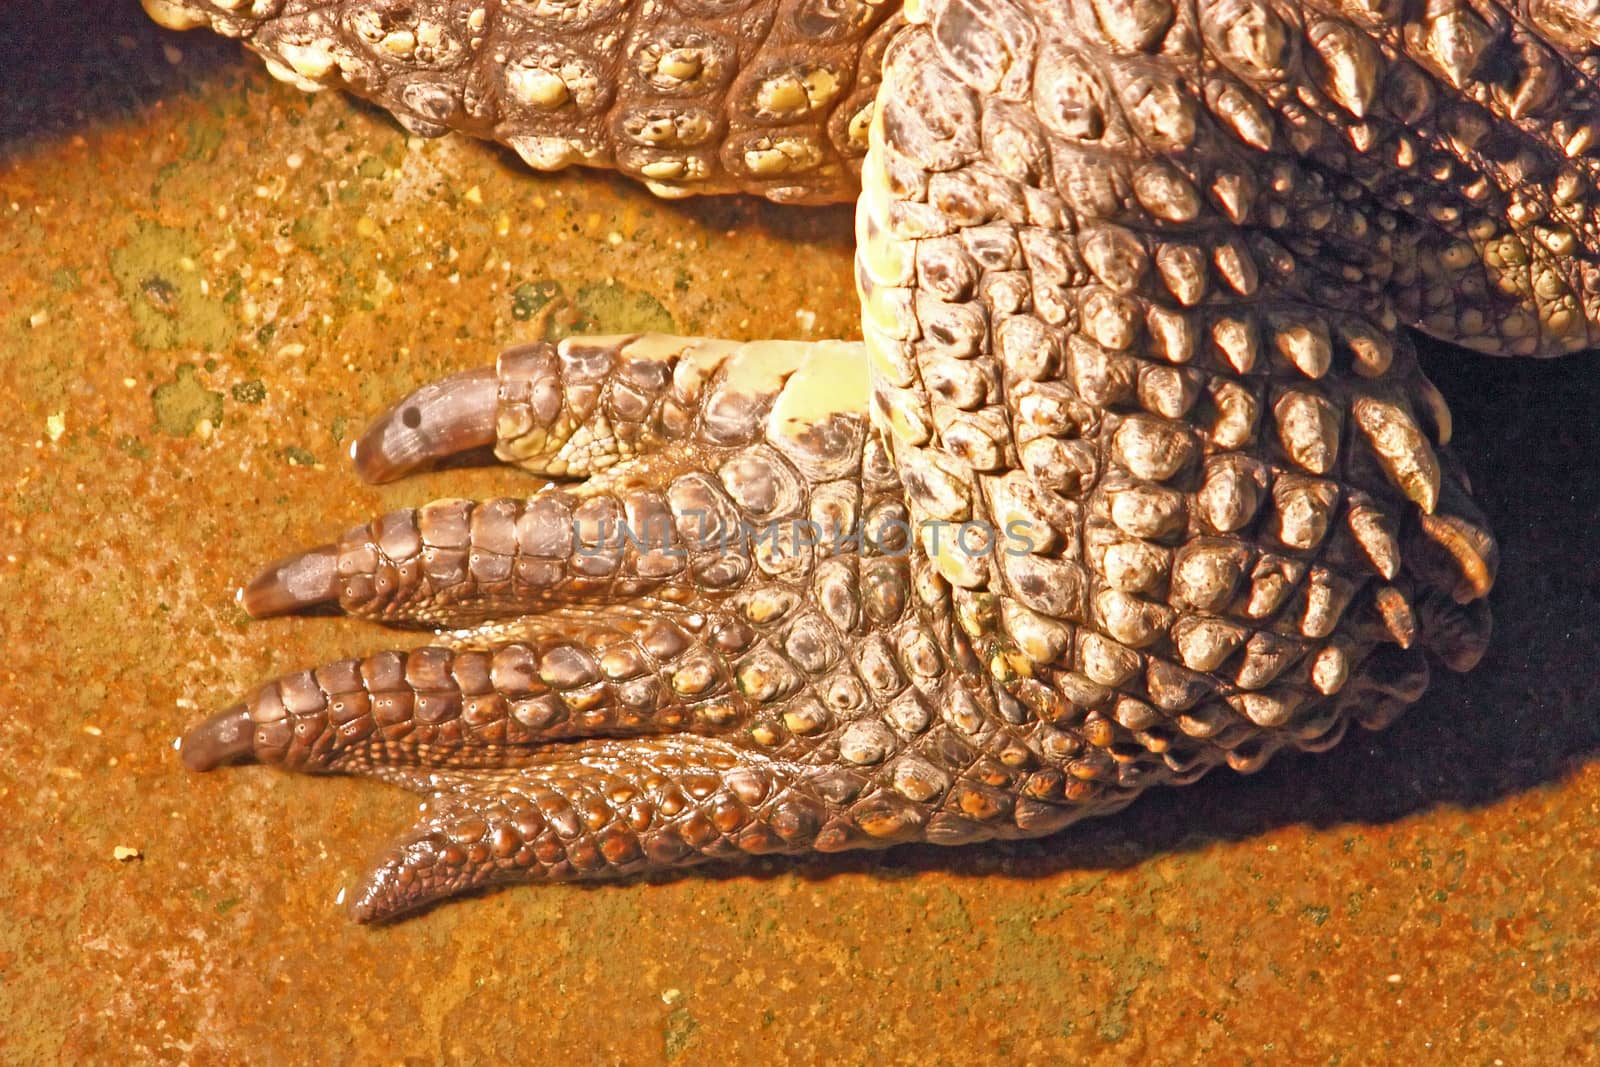 Leg of the Nile crocodile